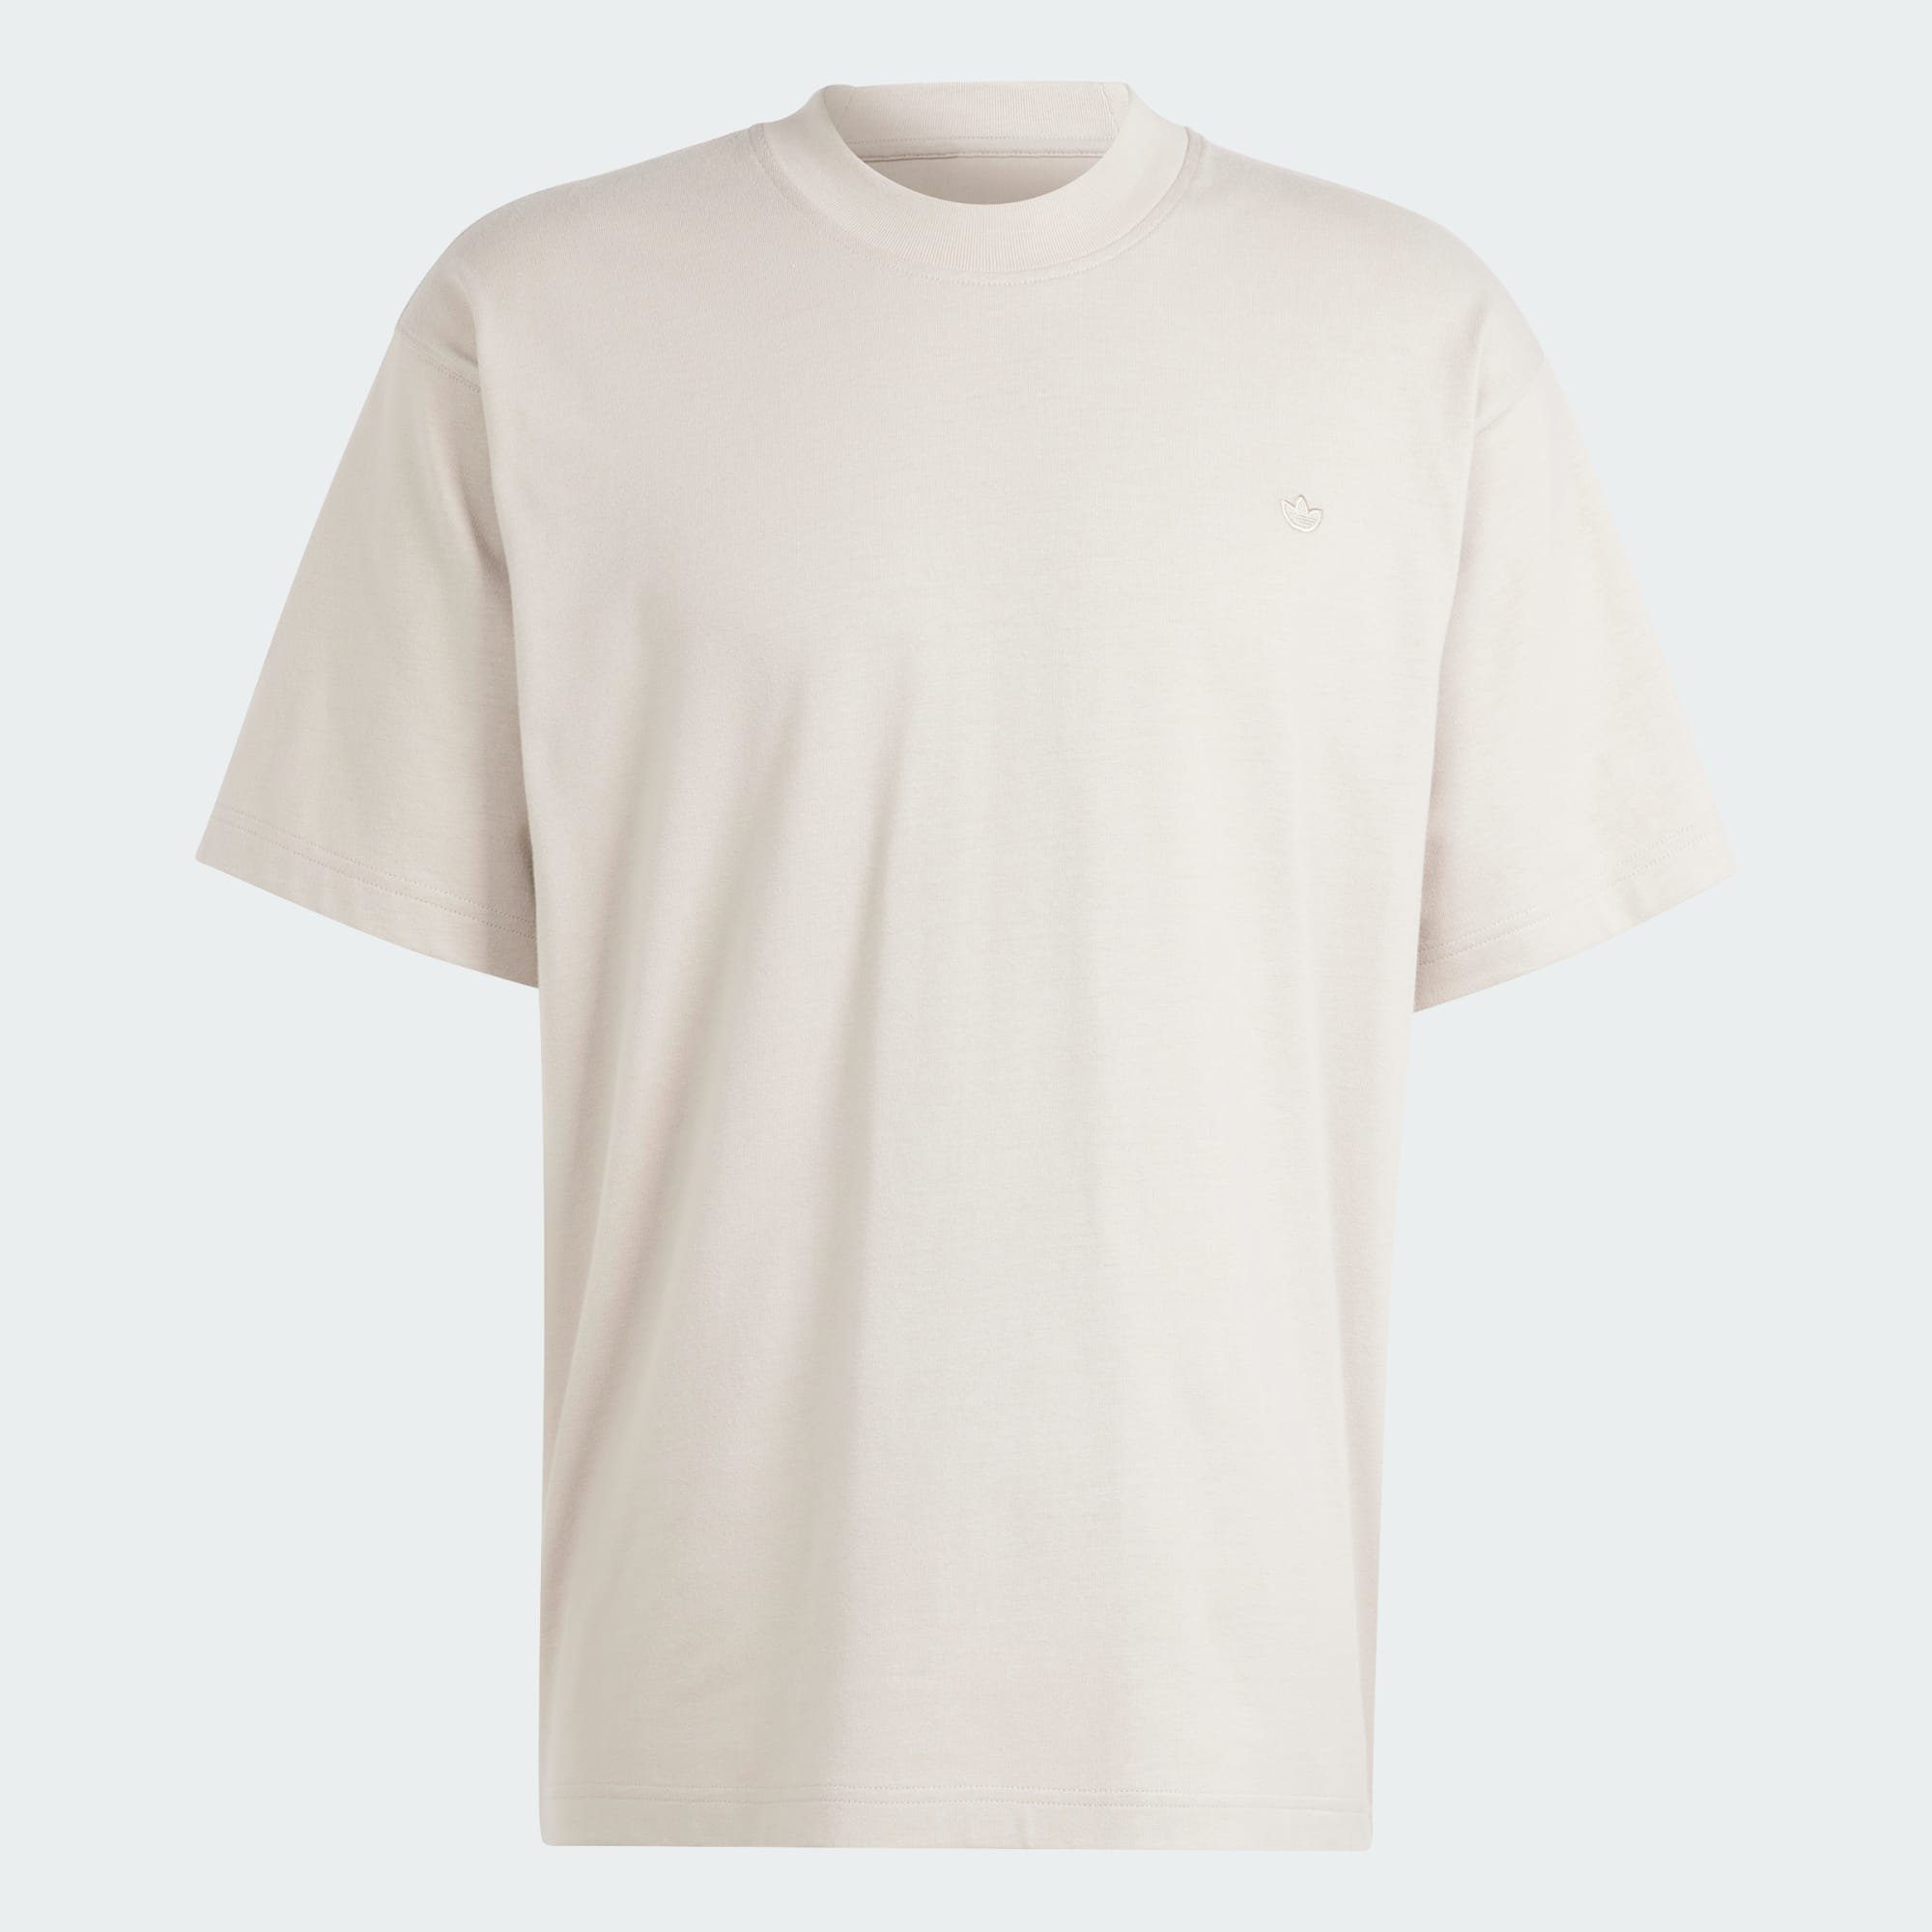 ADICOLOR / Wonder T-SHIRT Wonder CONTEMPO Beige Beige Originals adidas T-Shirt